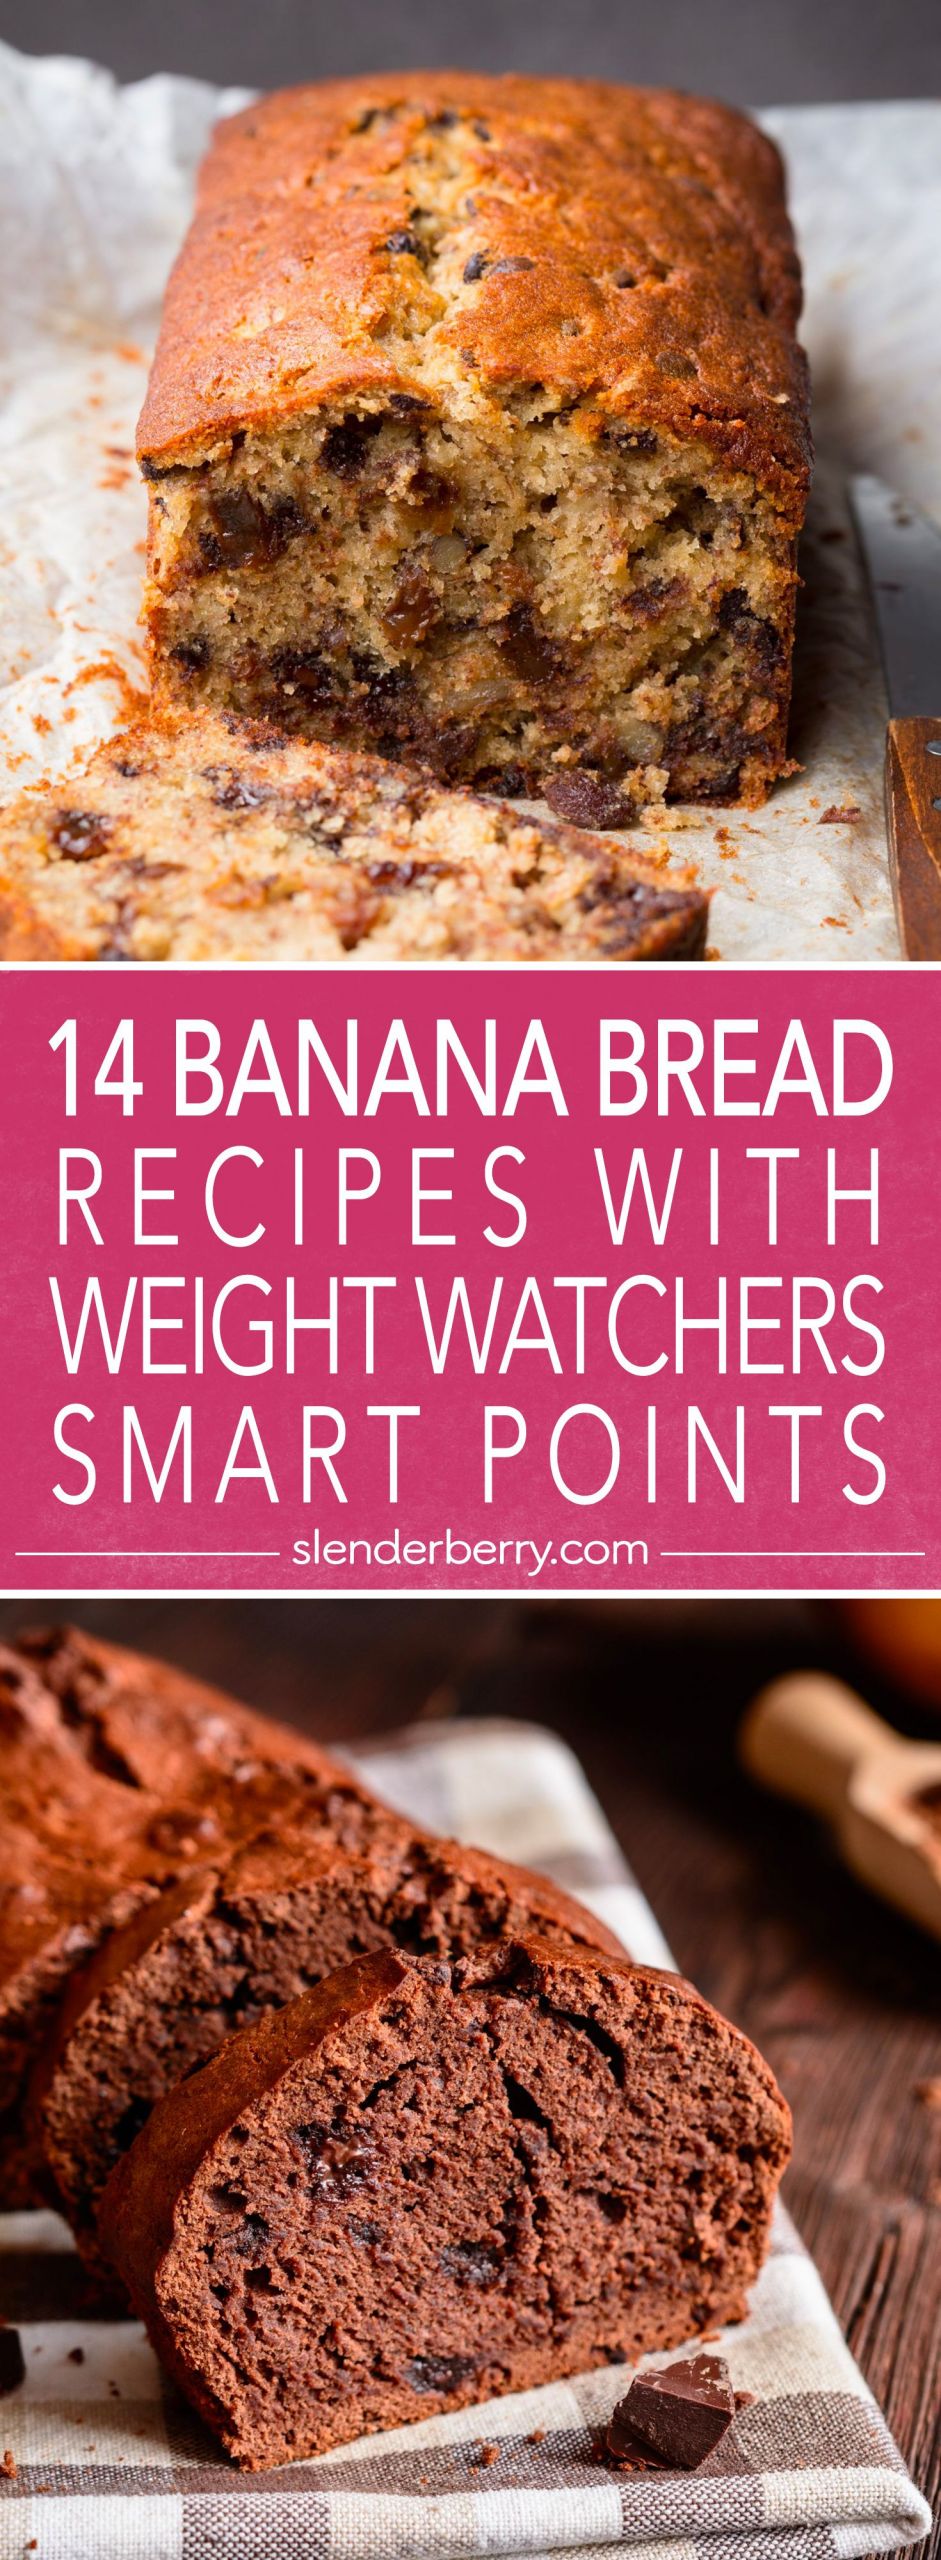 Weight Watchers Banana Bread Recipe
 14 Skinny Banana Bread Recipes